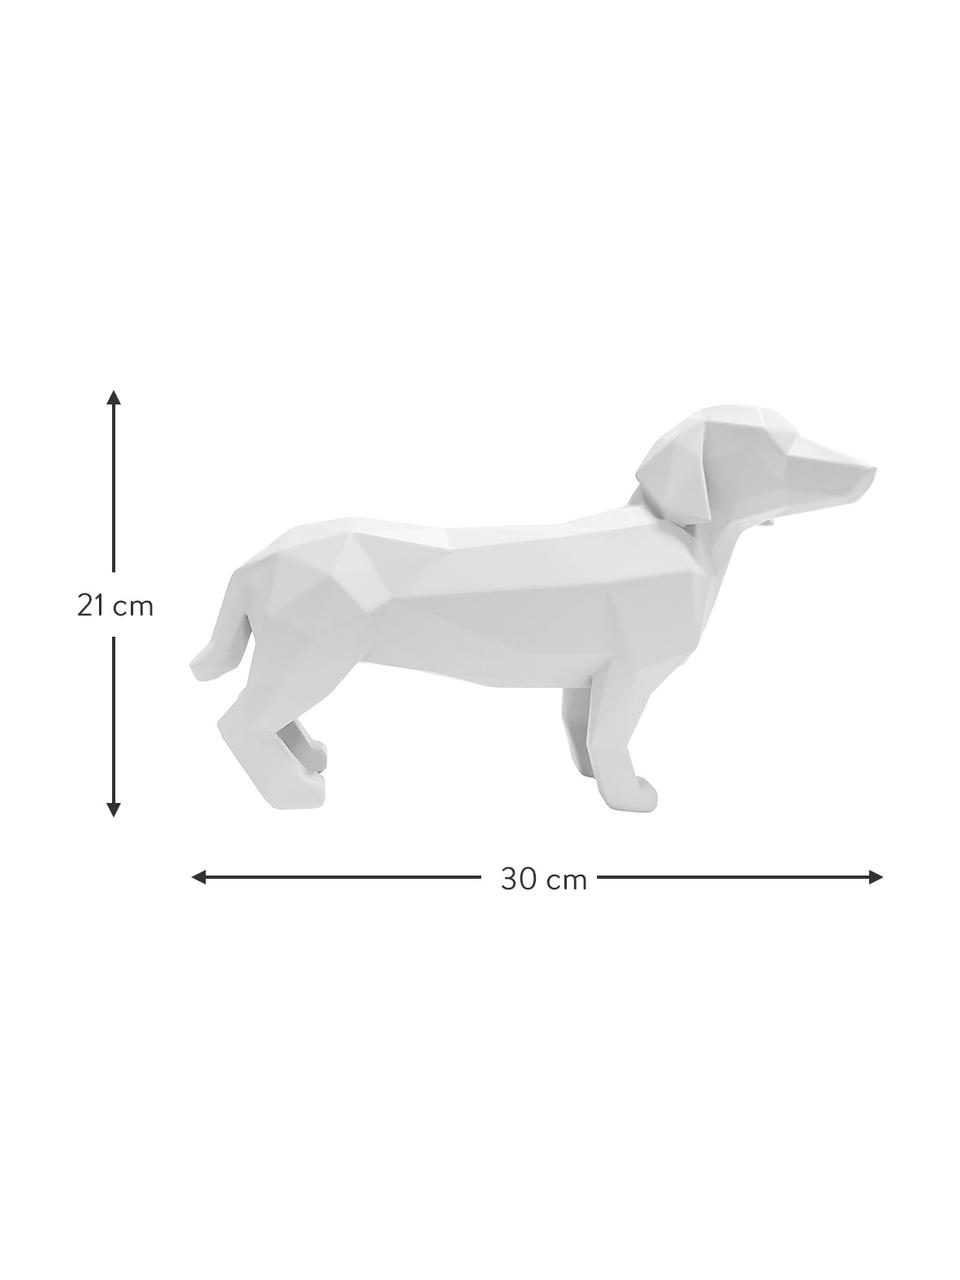 Dekoracja Origami Dog, Tworzywo sztuczne, Biały, S 30 x W 21 cm